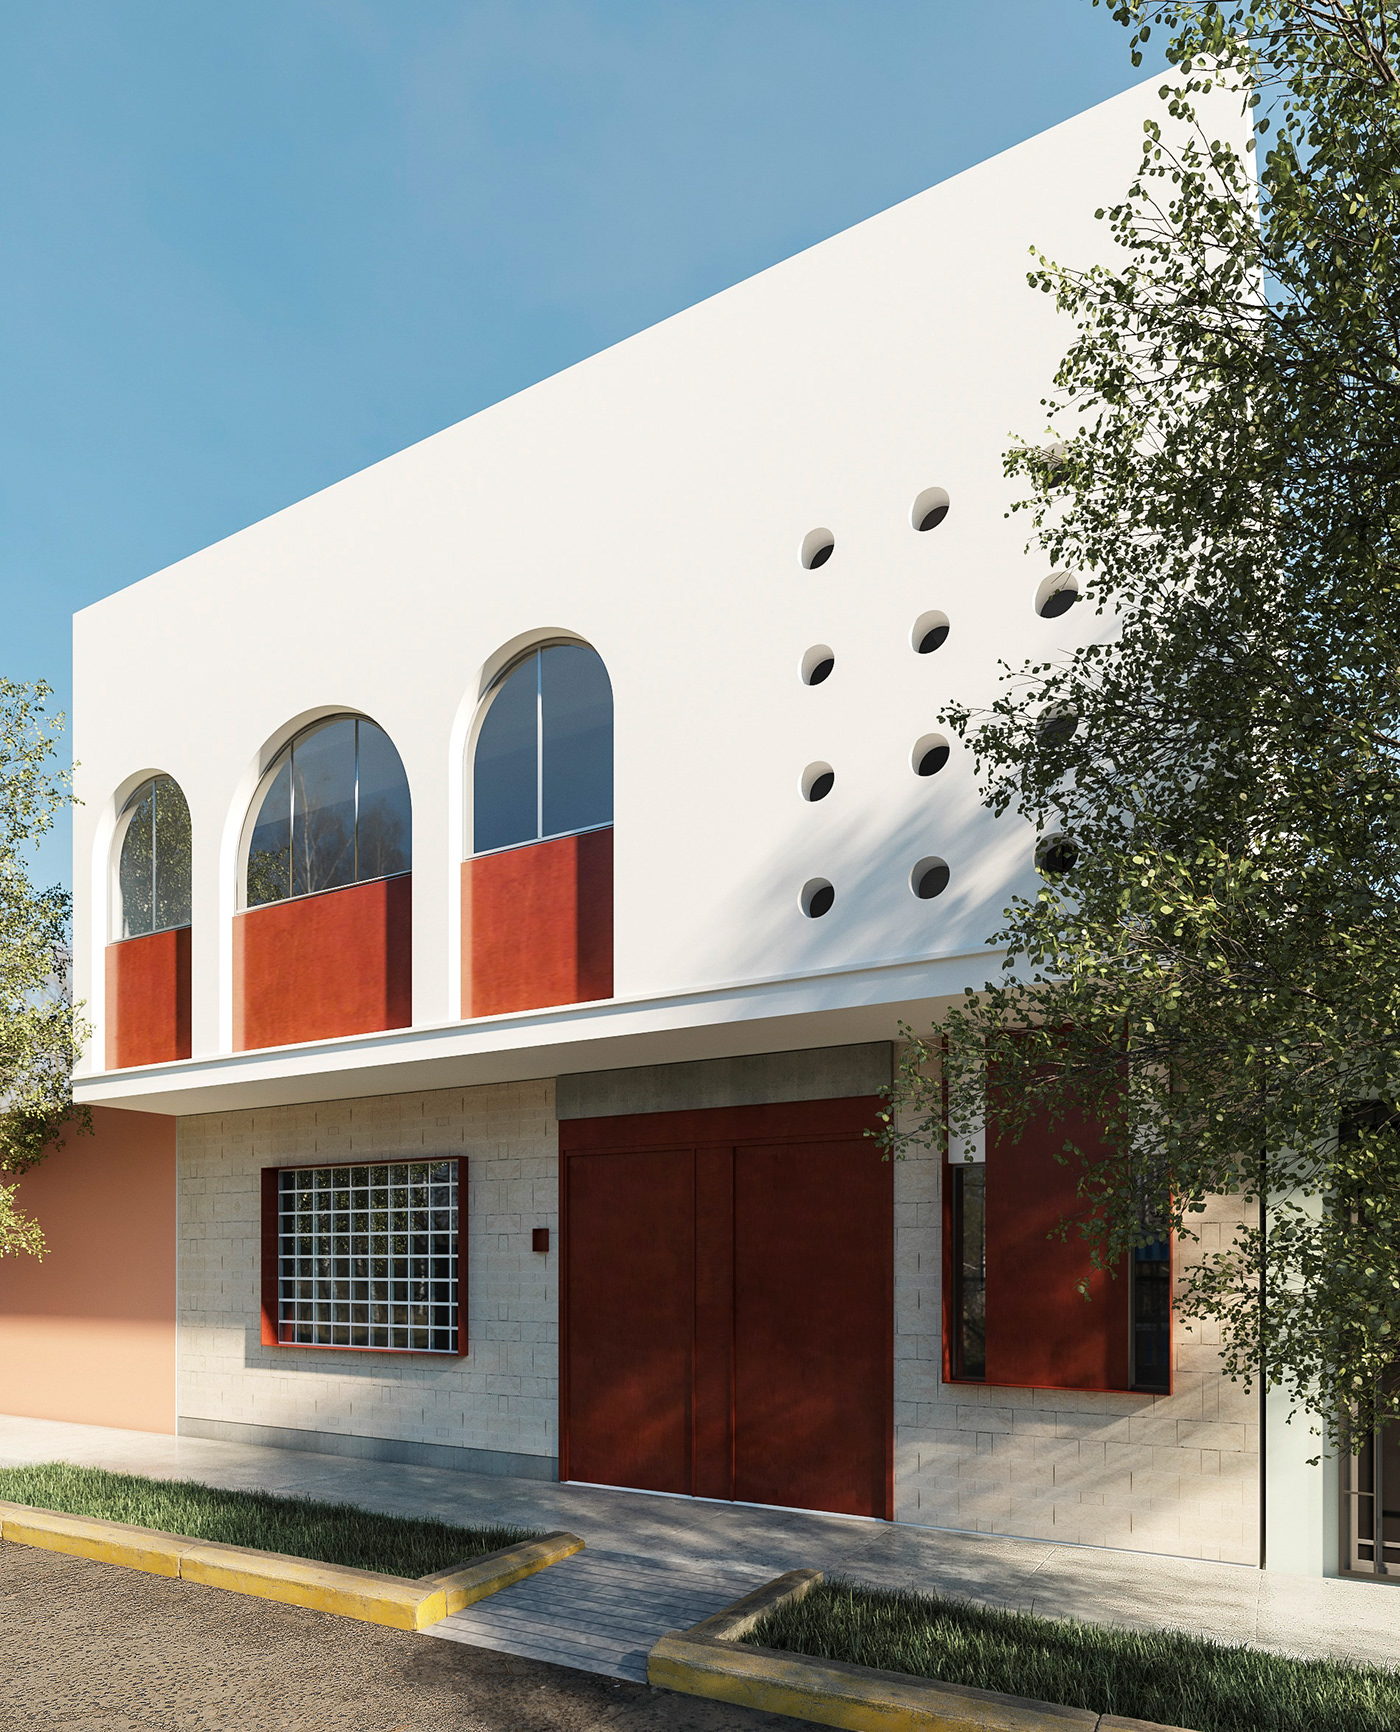 arquitectura 3D Render exterior fachadas remodelacion diseño visual identity arquitecto Ampliacion vivienda